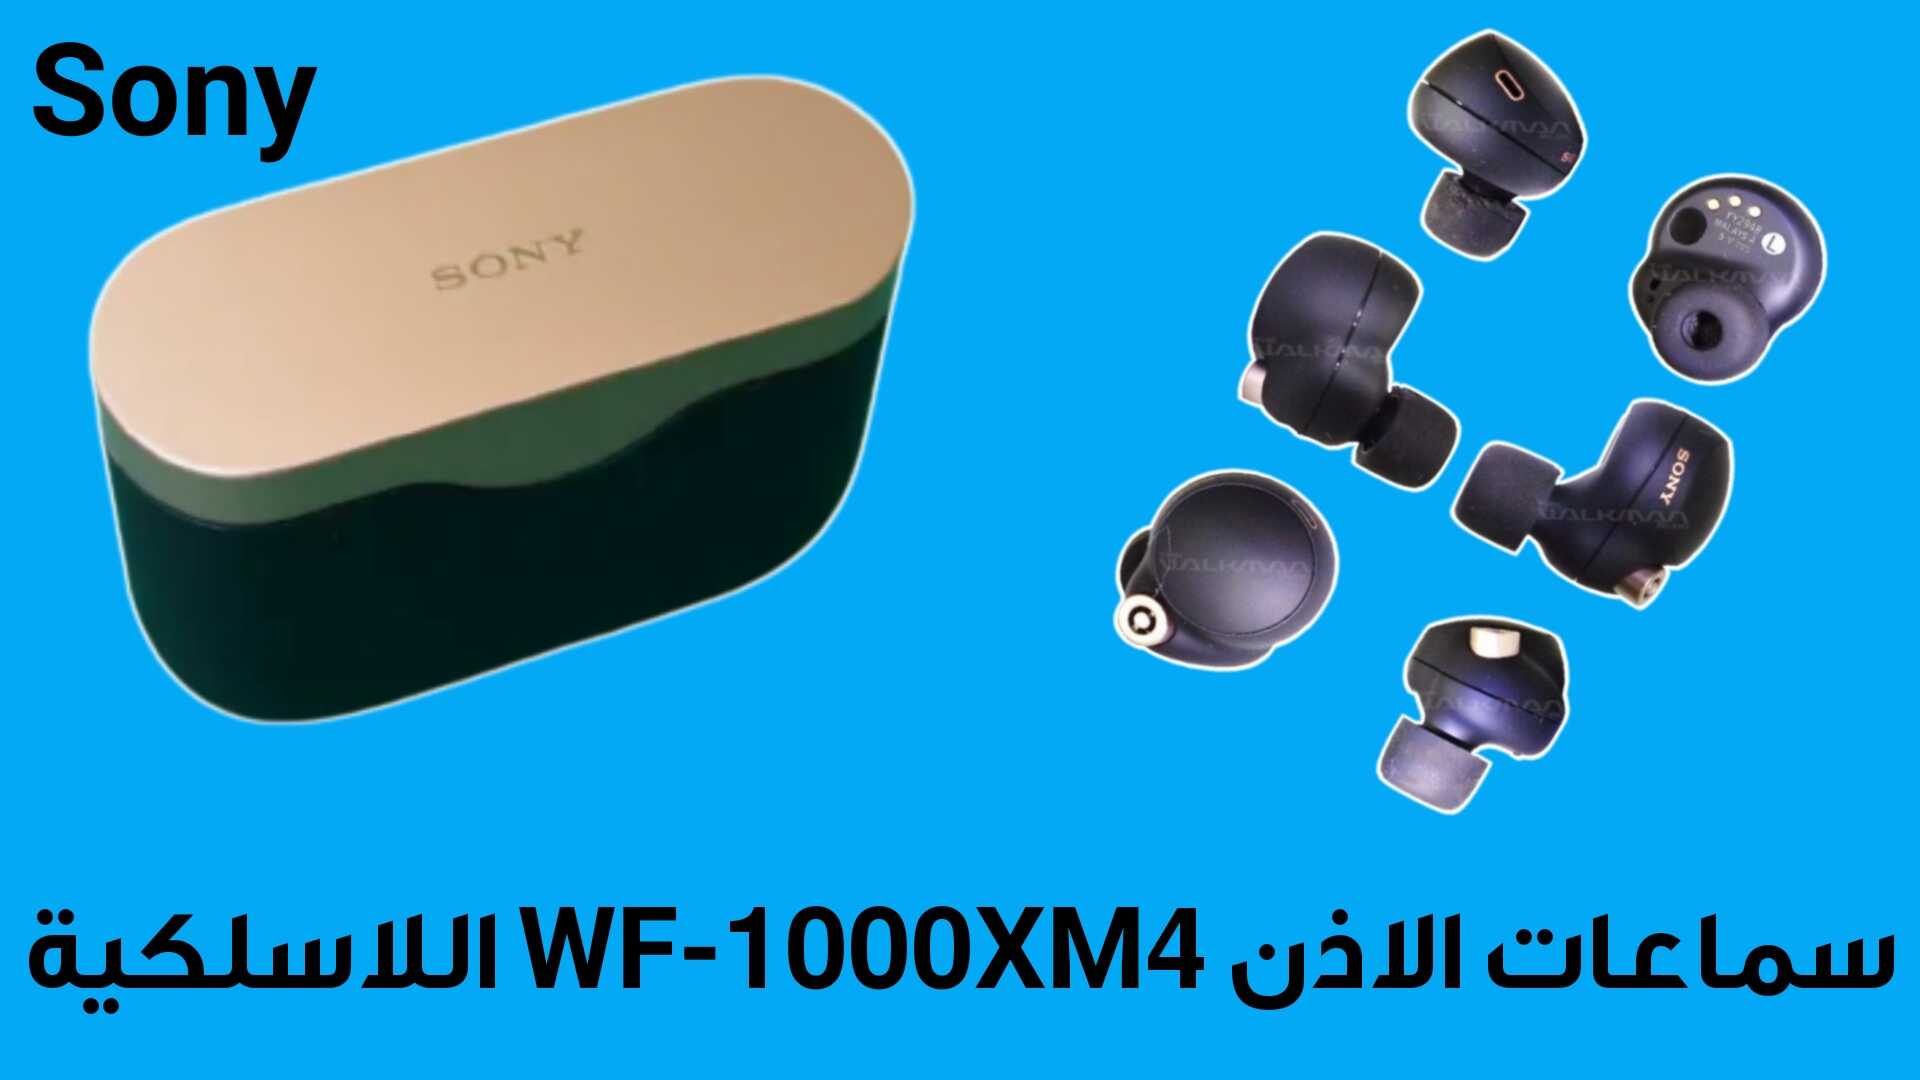 تعرف على سماعات الاذن WF-1000XM4 اللاسلكية من Sony